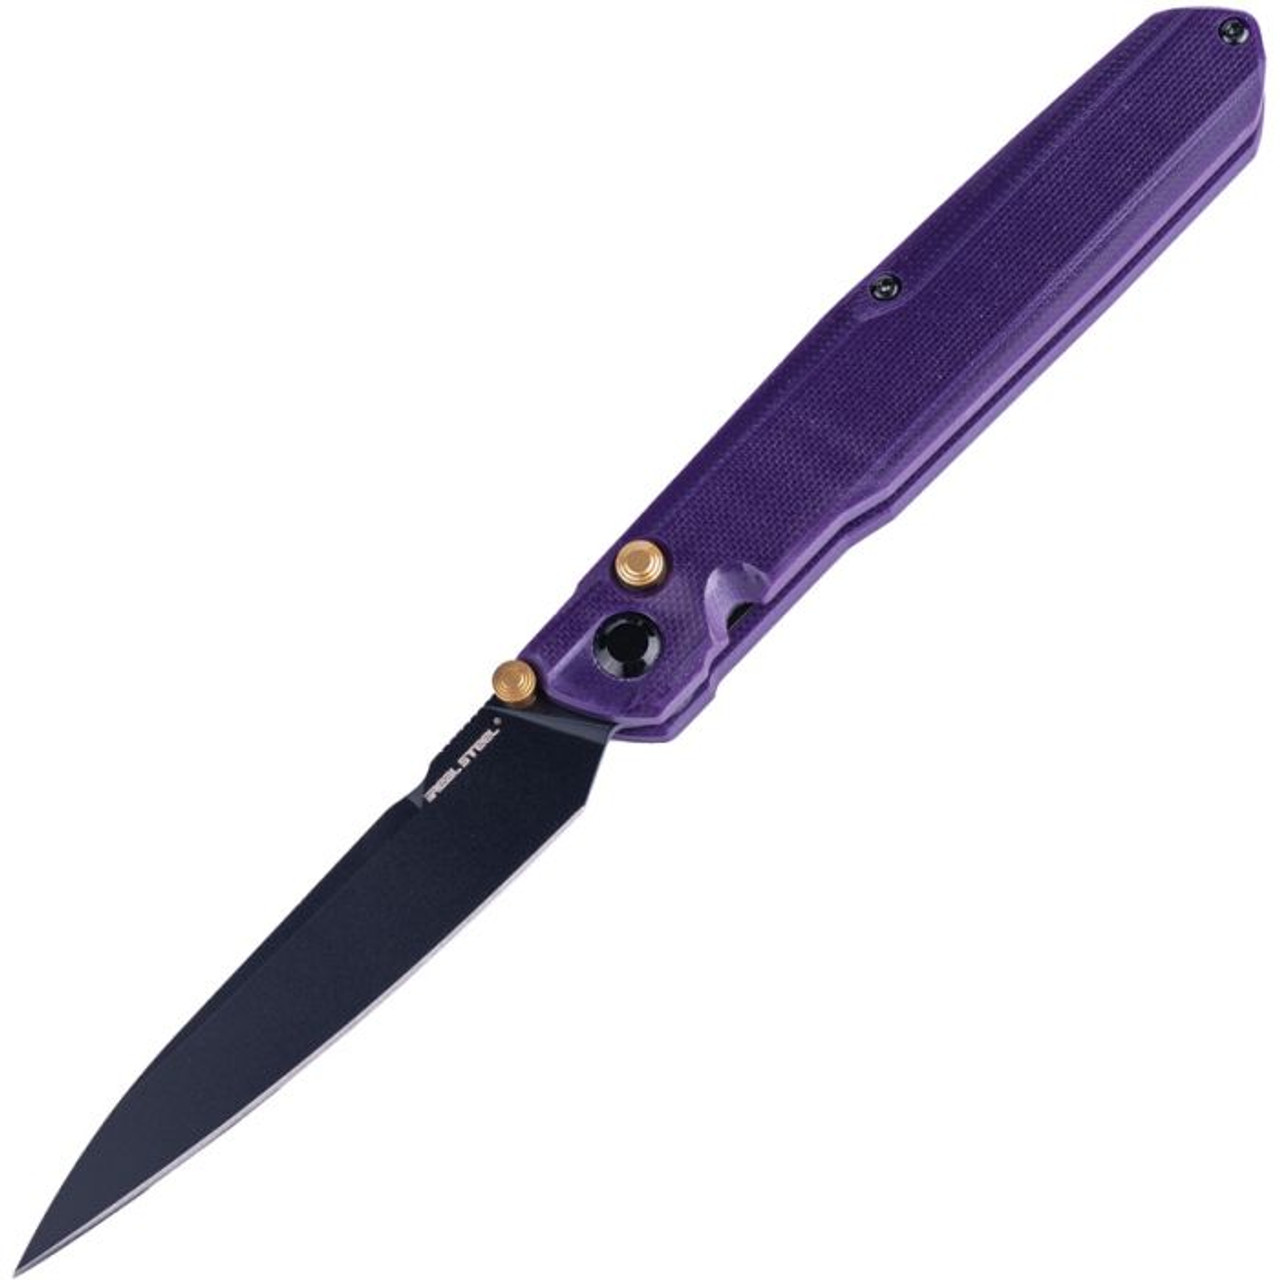 Real Steel G5 Metamorph (RS7832P) 3.5" 14C28N Black PVD Coated Drop Point Plain Blade, Purple G-10 Handle